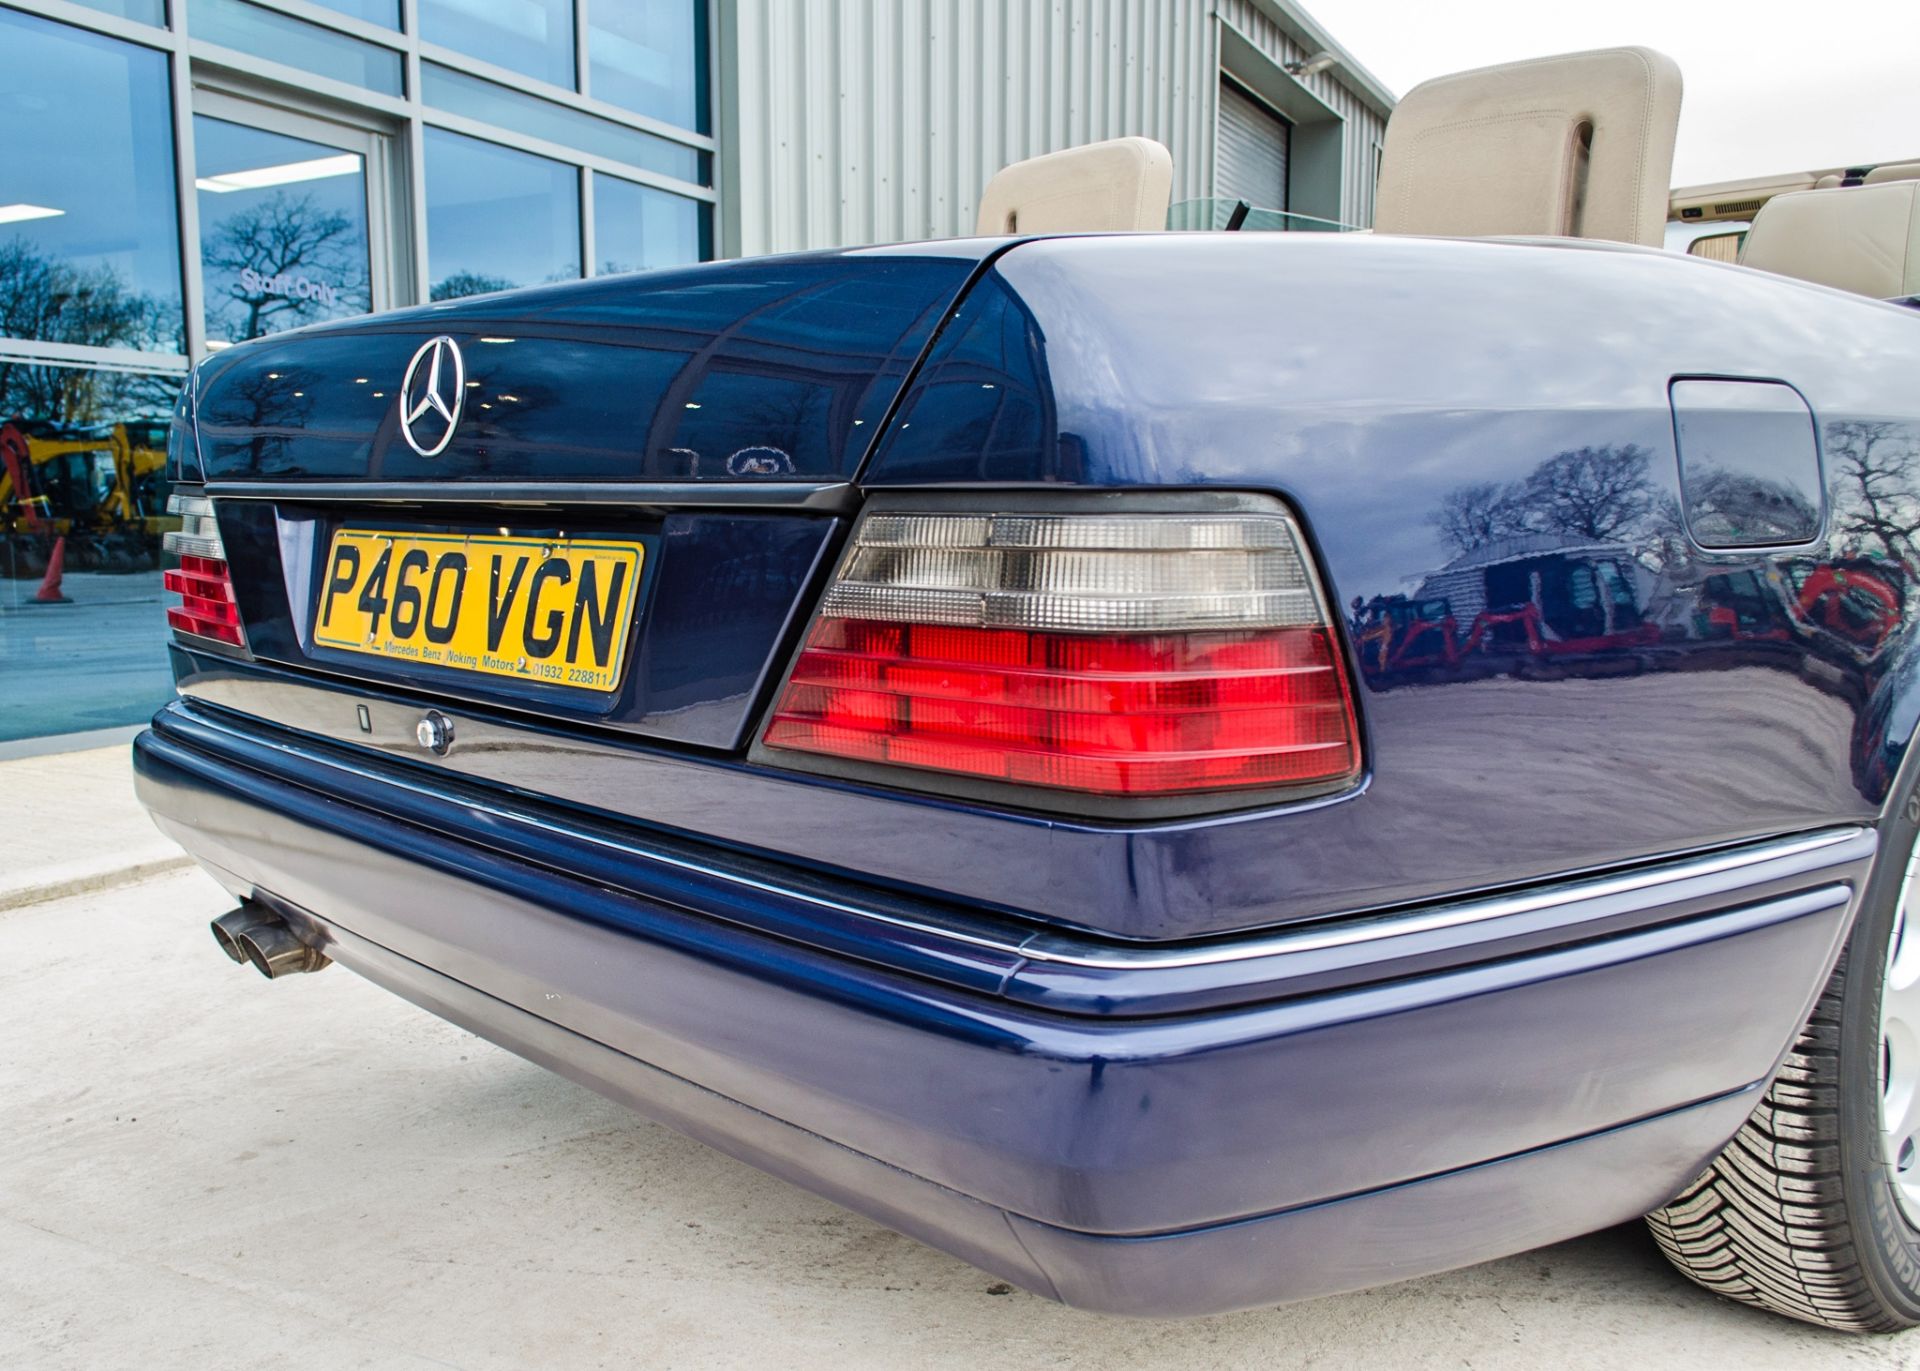 1997 Mercedes E220 2.2 litre 2 door cabriolet Registration: P460VGN Chassis: WDB1240622C292059 - Image 20 of 60